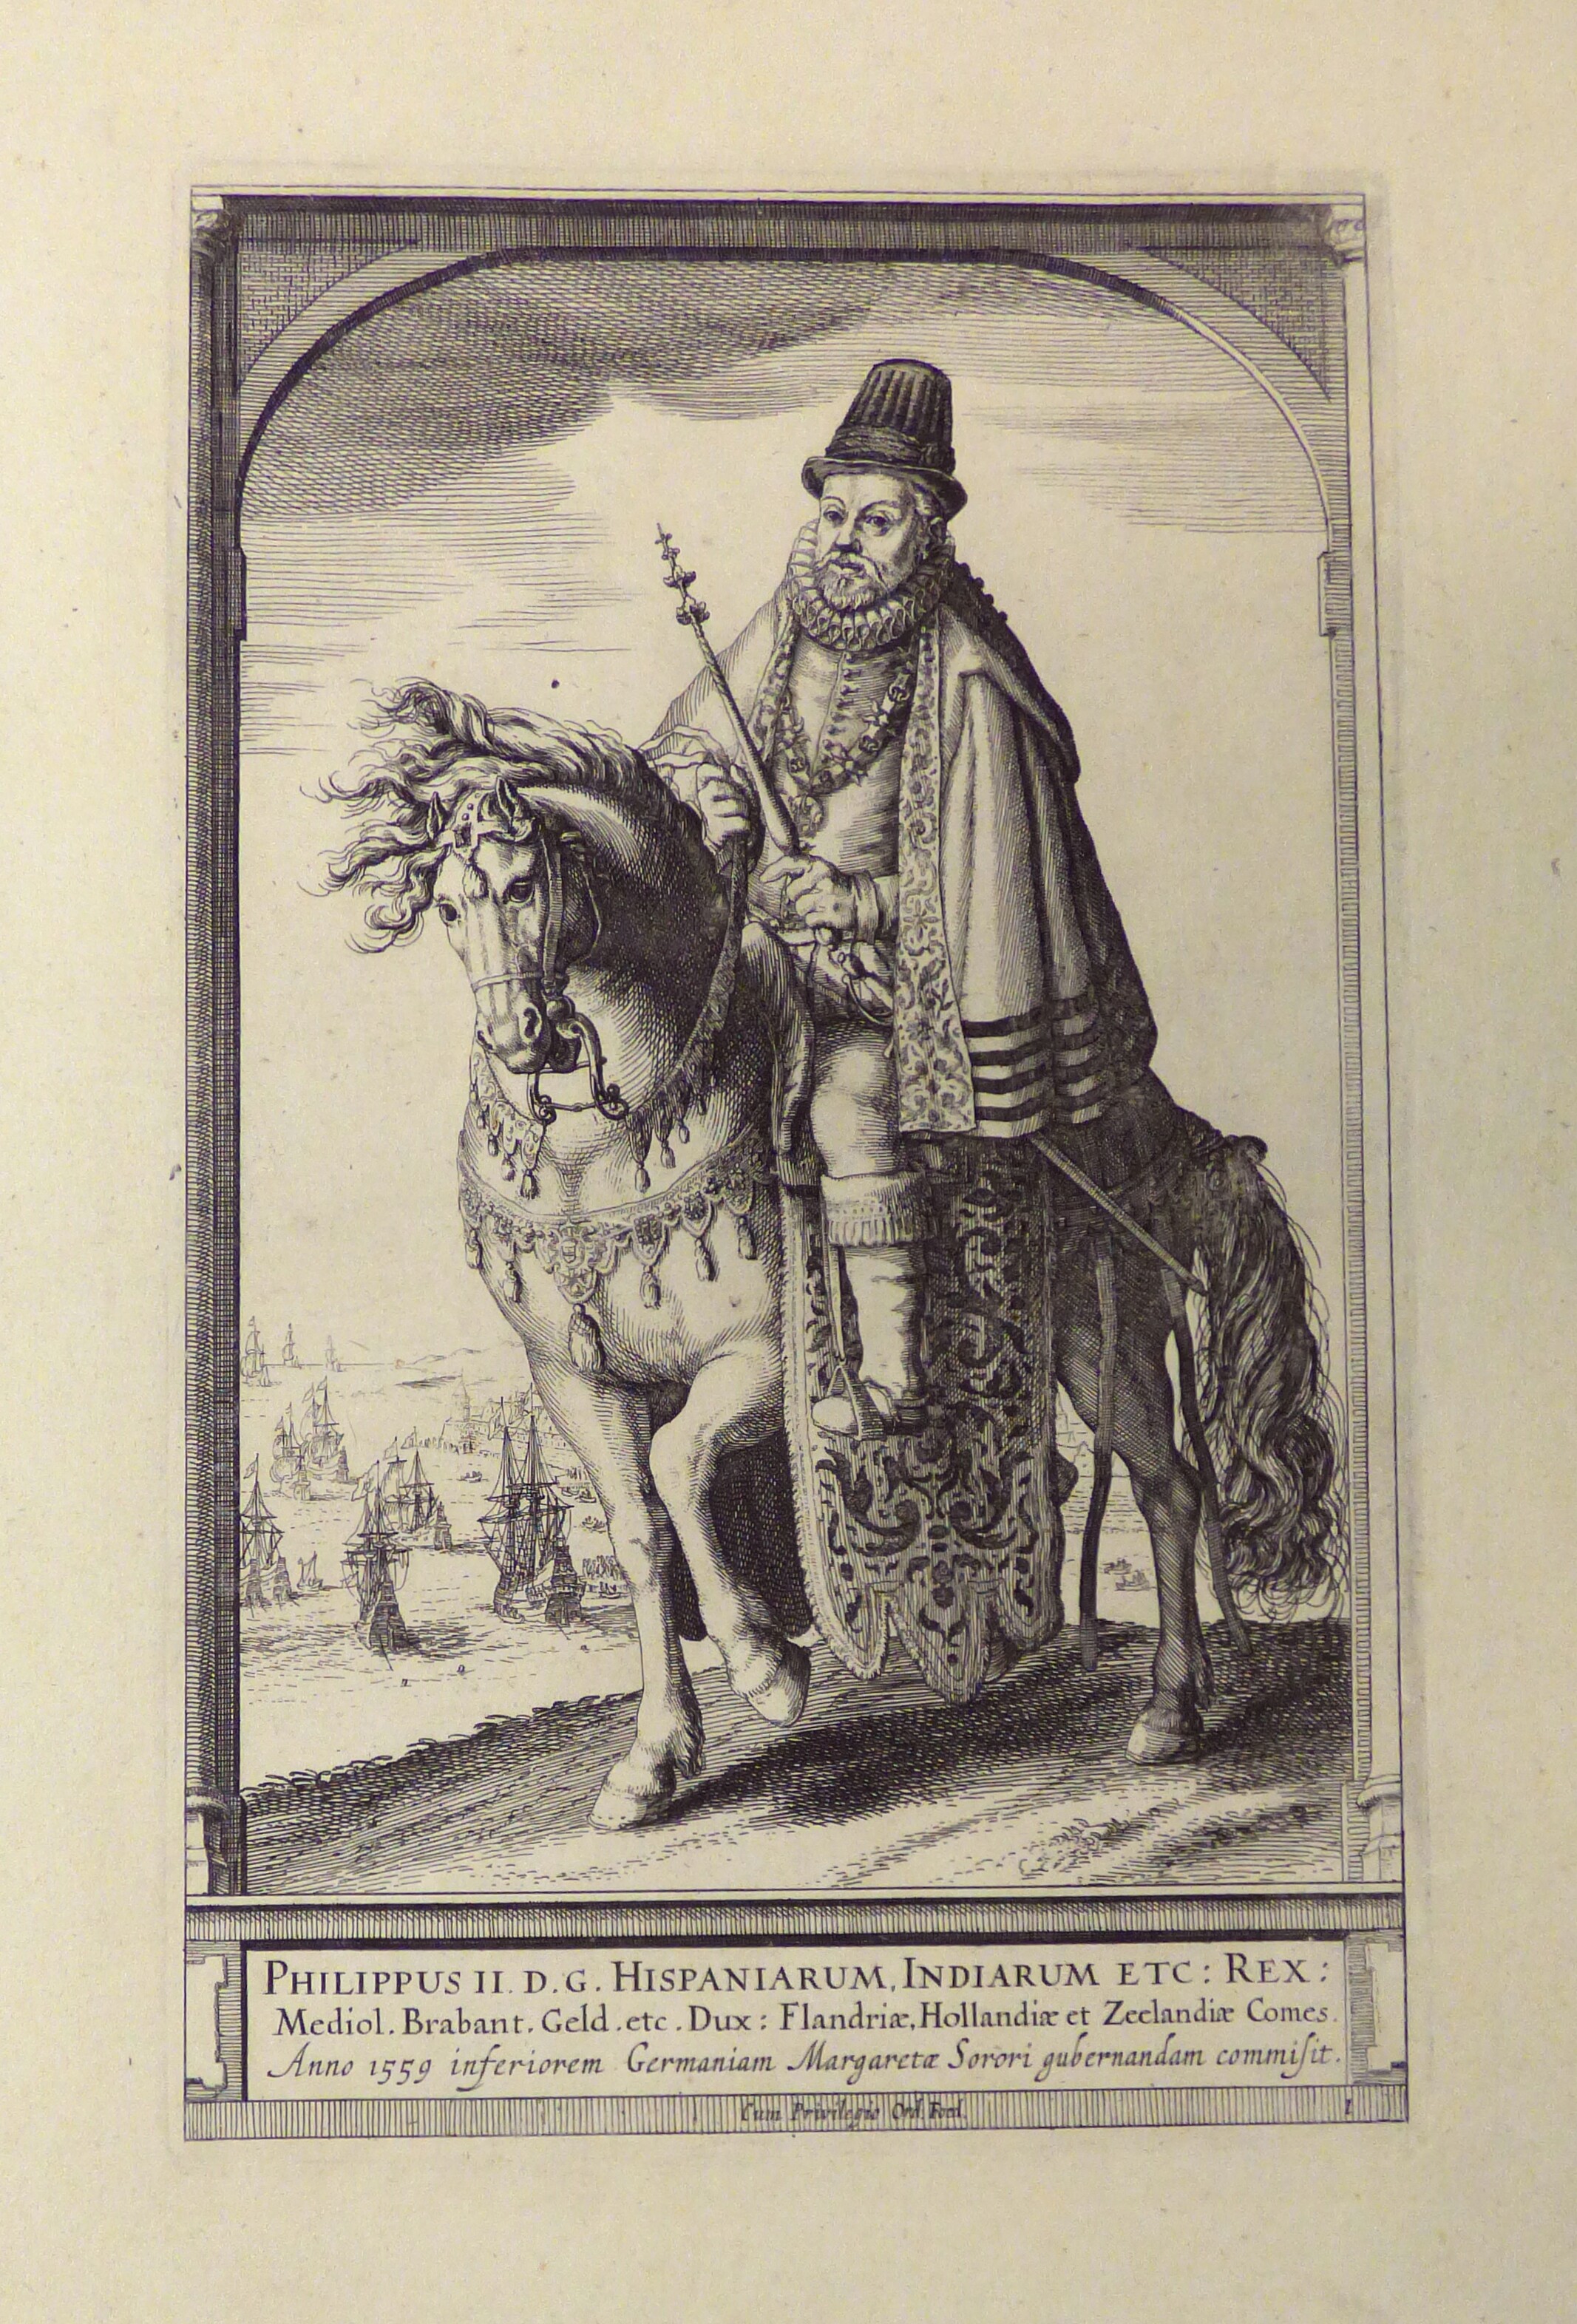 Philipp II. von Spanien, als Statthalter der Niederlande dargestellt. (Städtisches Museum Schloss Rheydt CC BY)